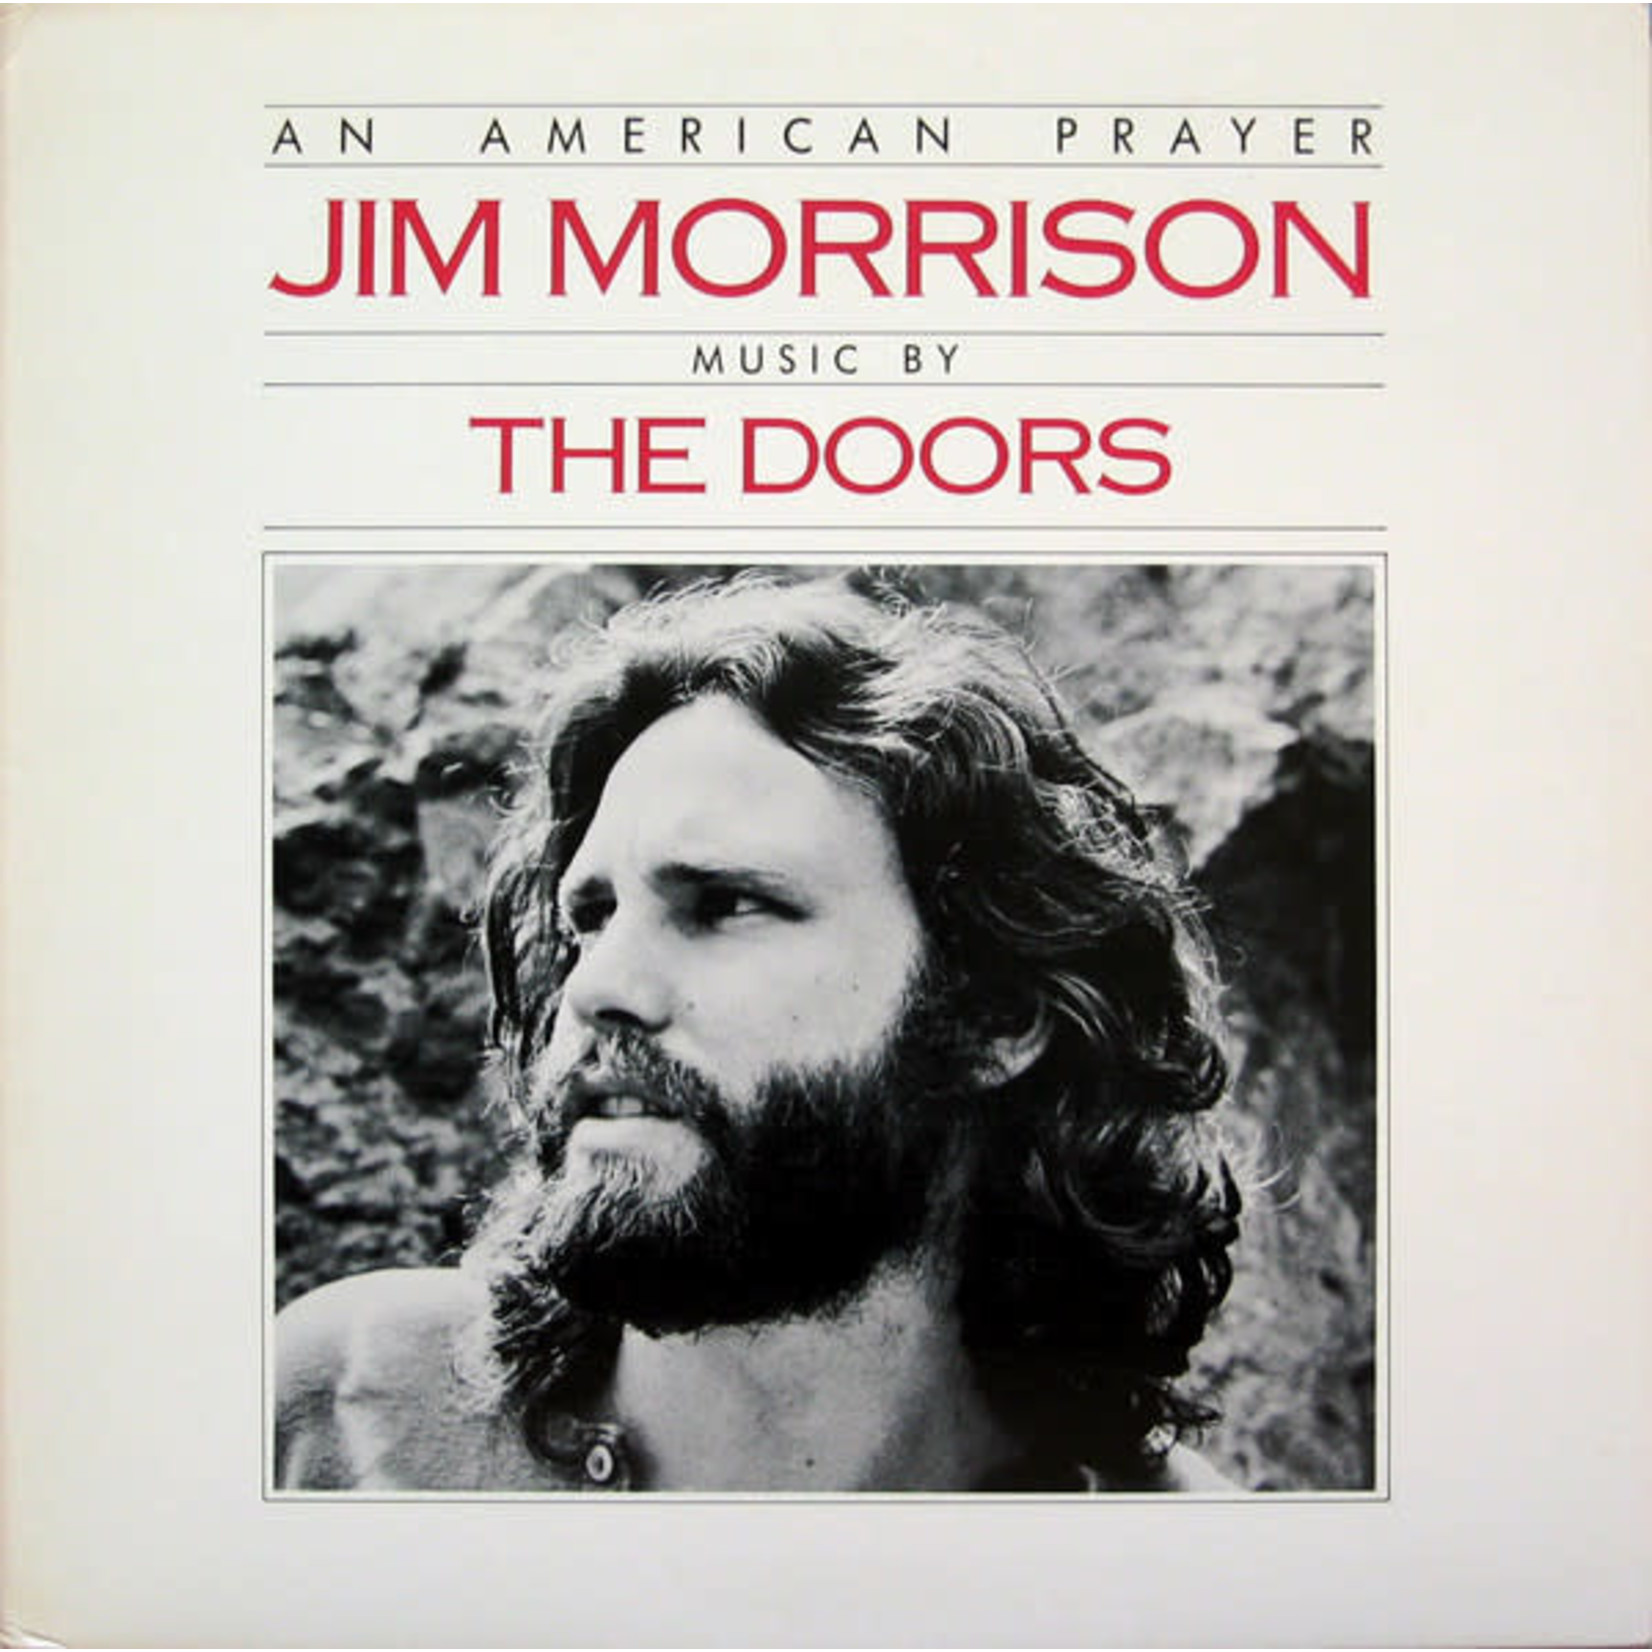 [Vintage] Jim Morrison - An American Prayer